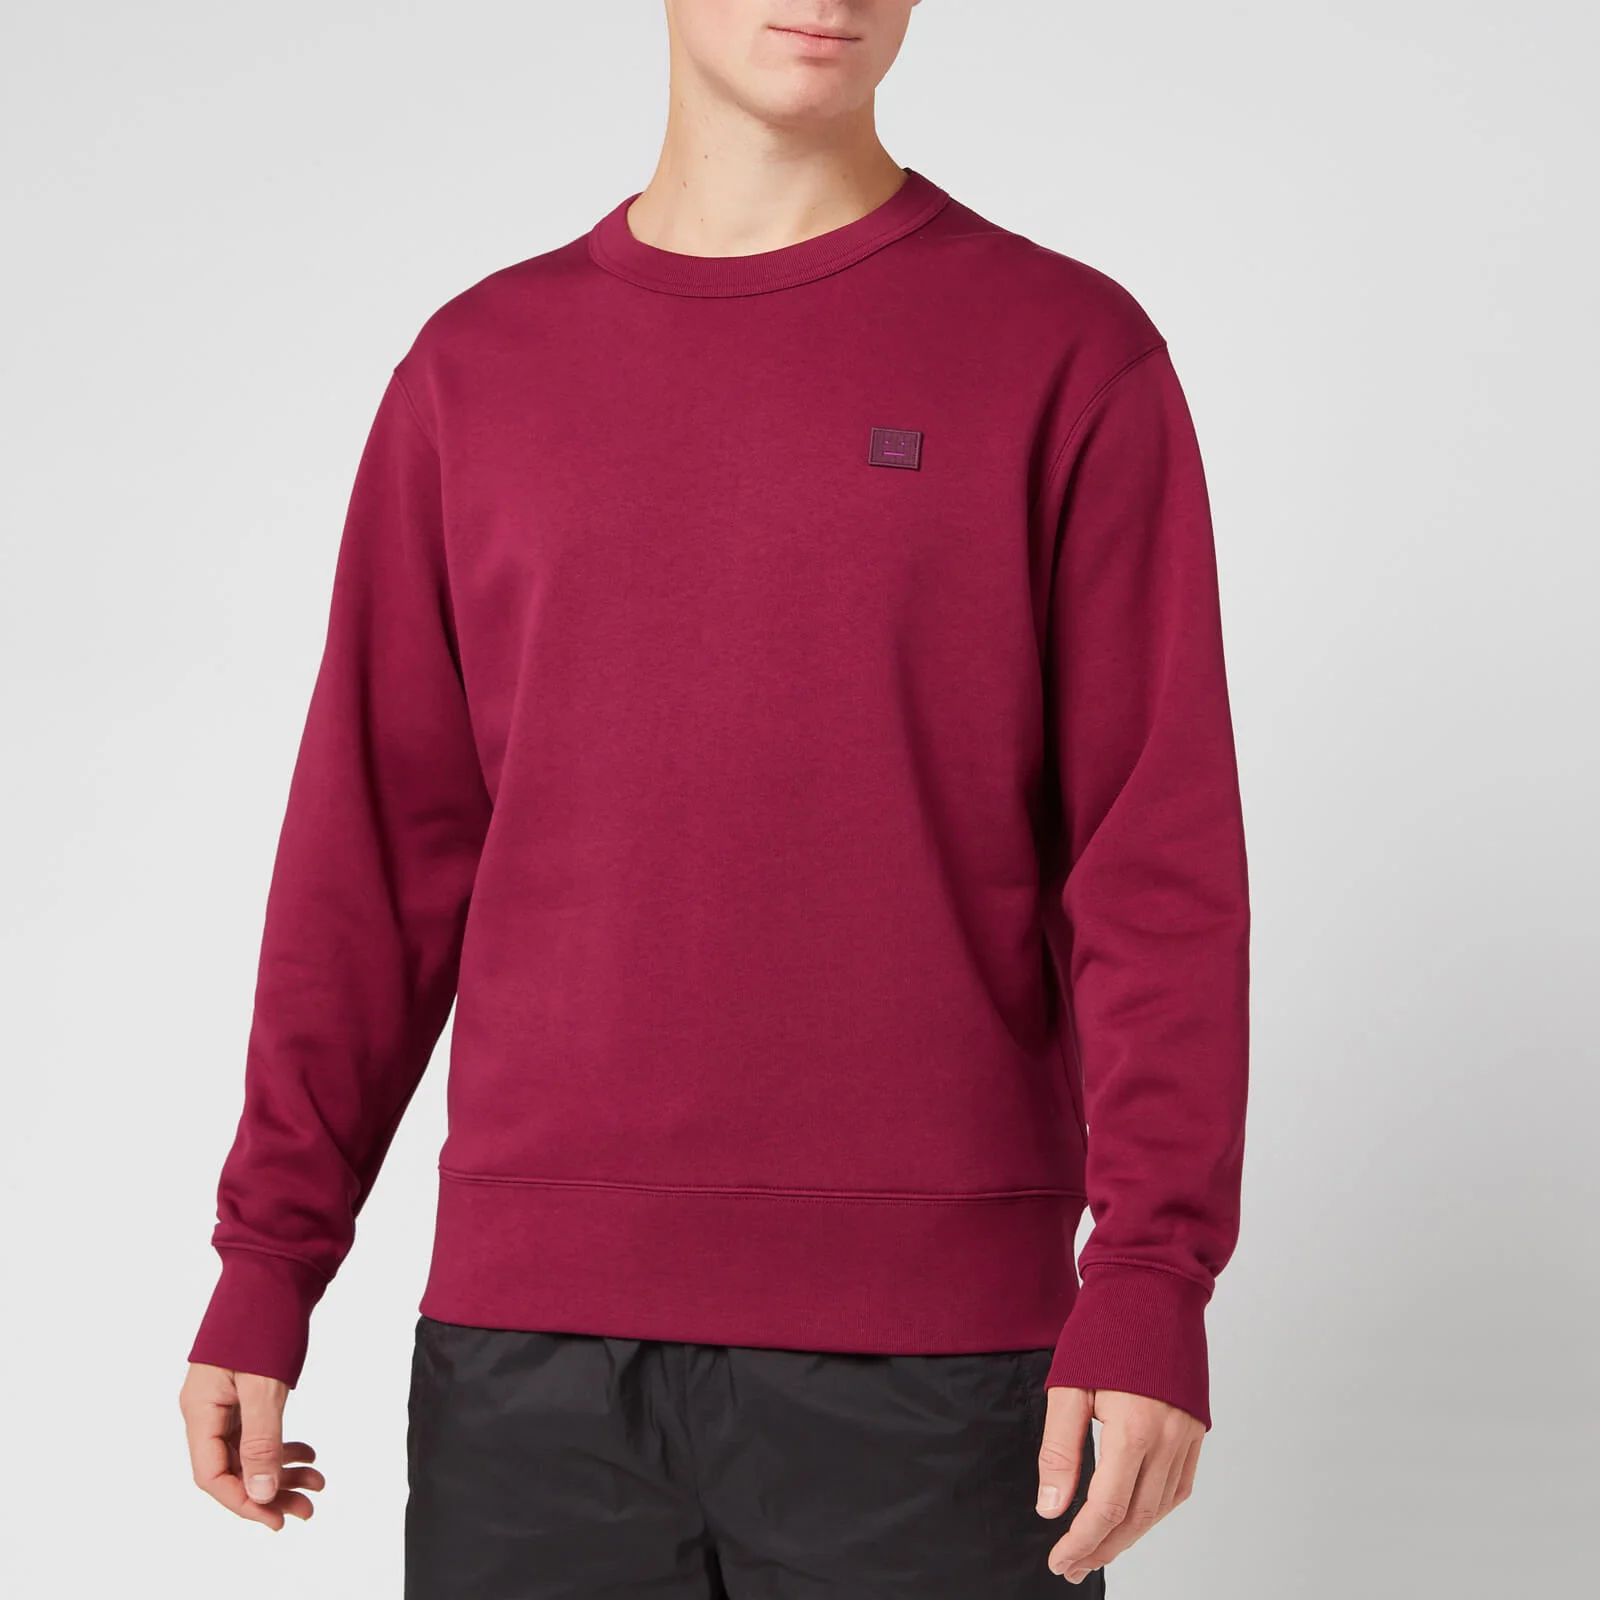 Acne Studios Men's Fairview Face Sweatshirt - Dark Pink Image 1